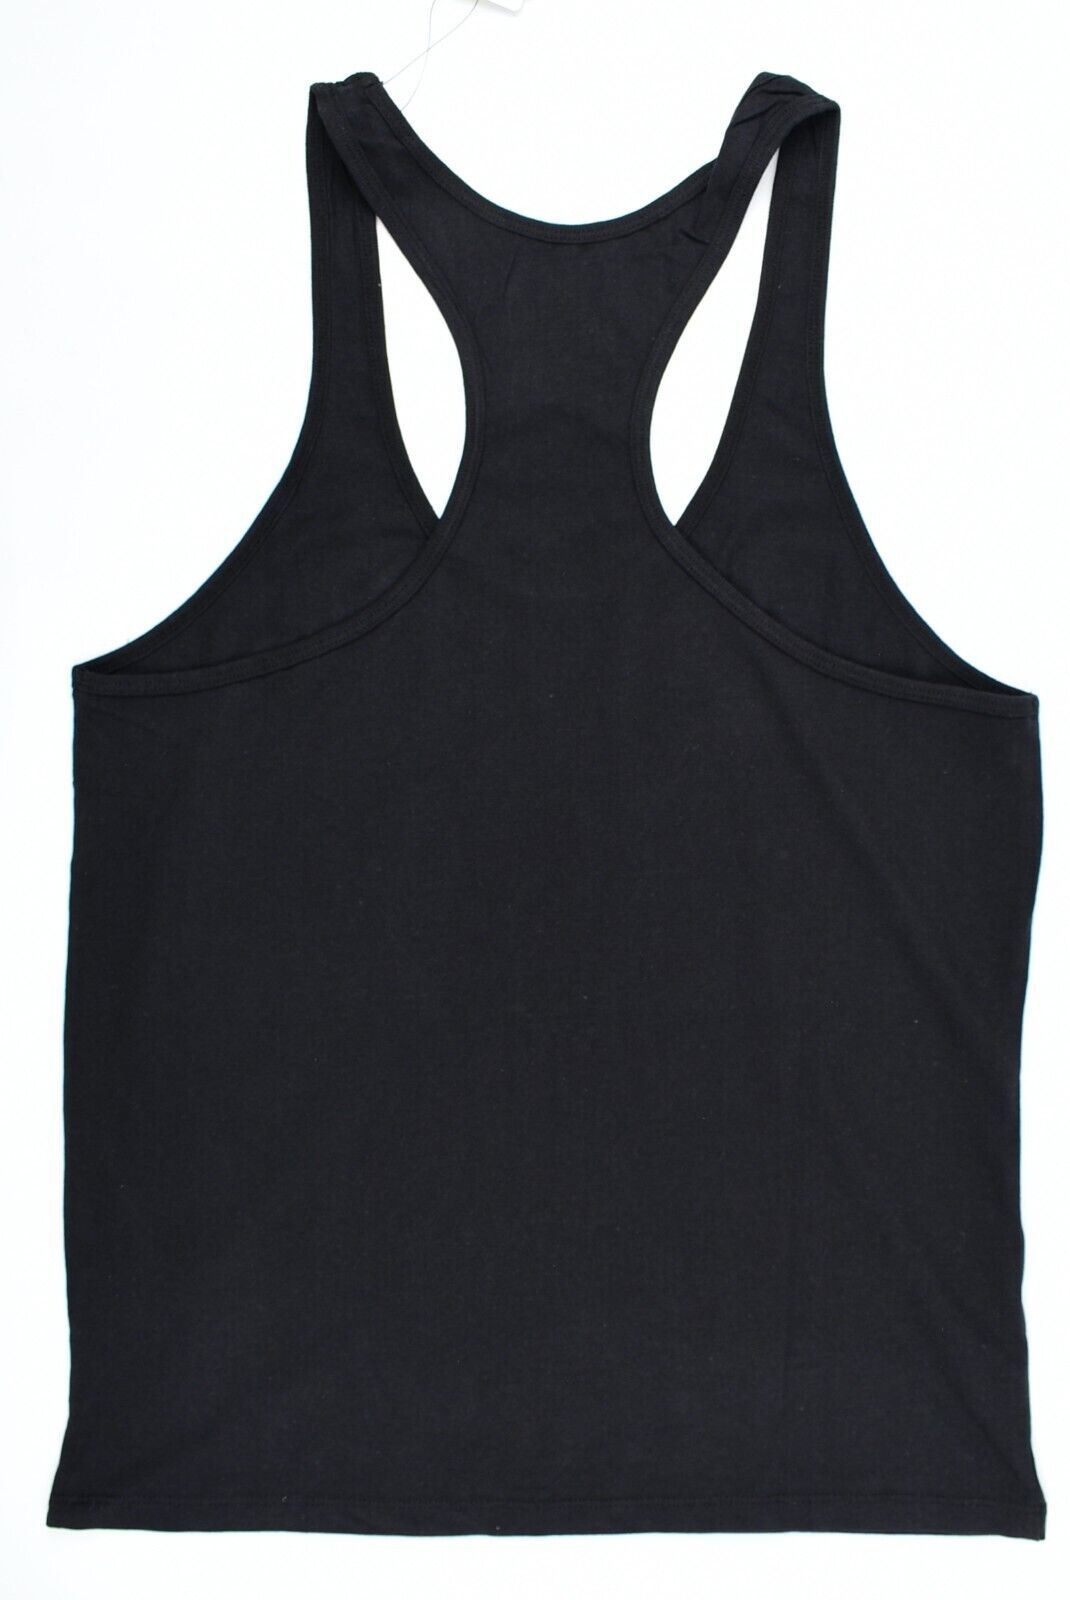 GOLD'S GYM Core Collection Men's MUSCLE JOE Vest Top, Black, size L